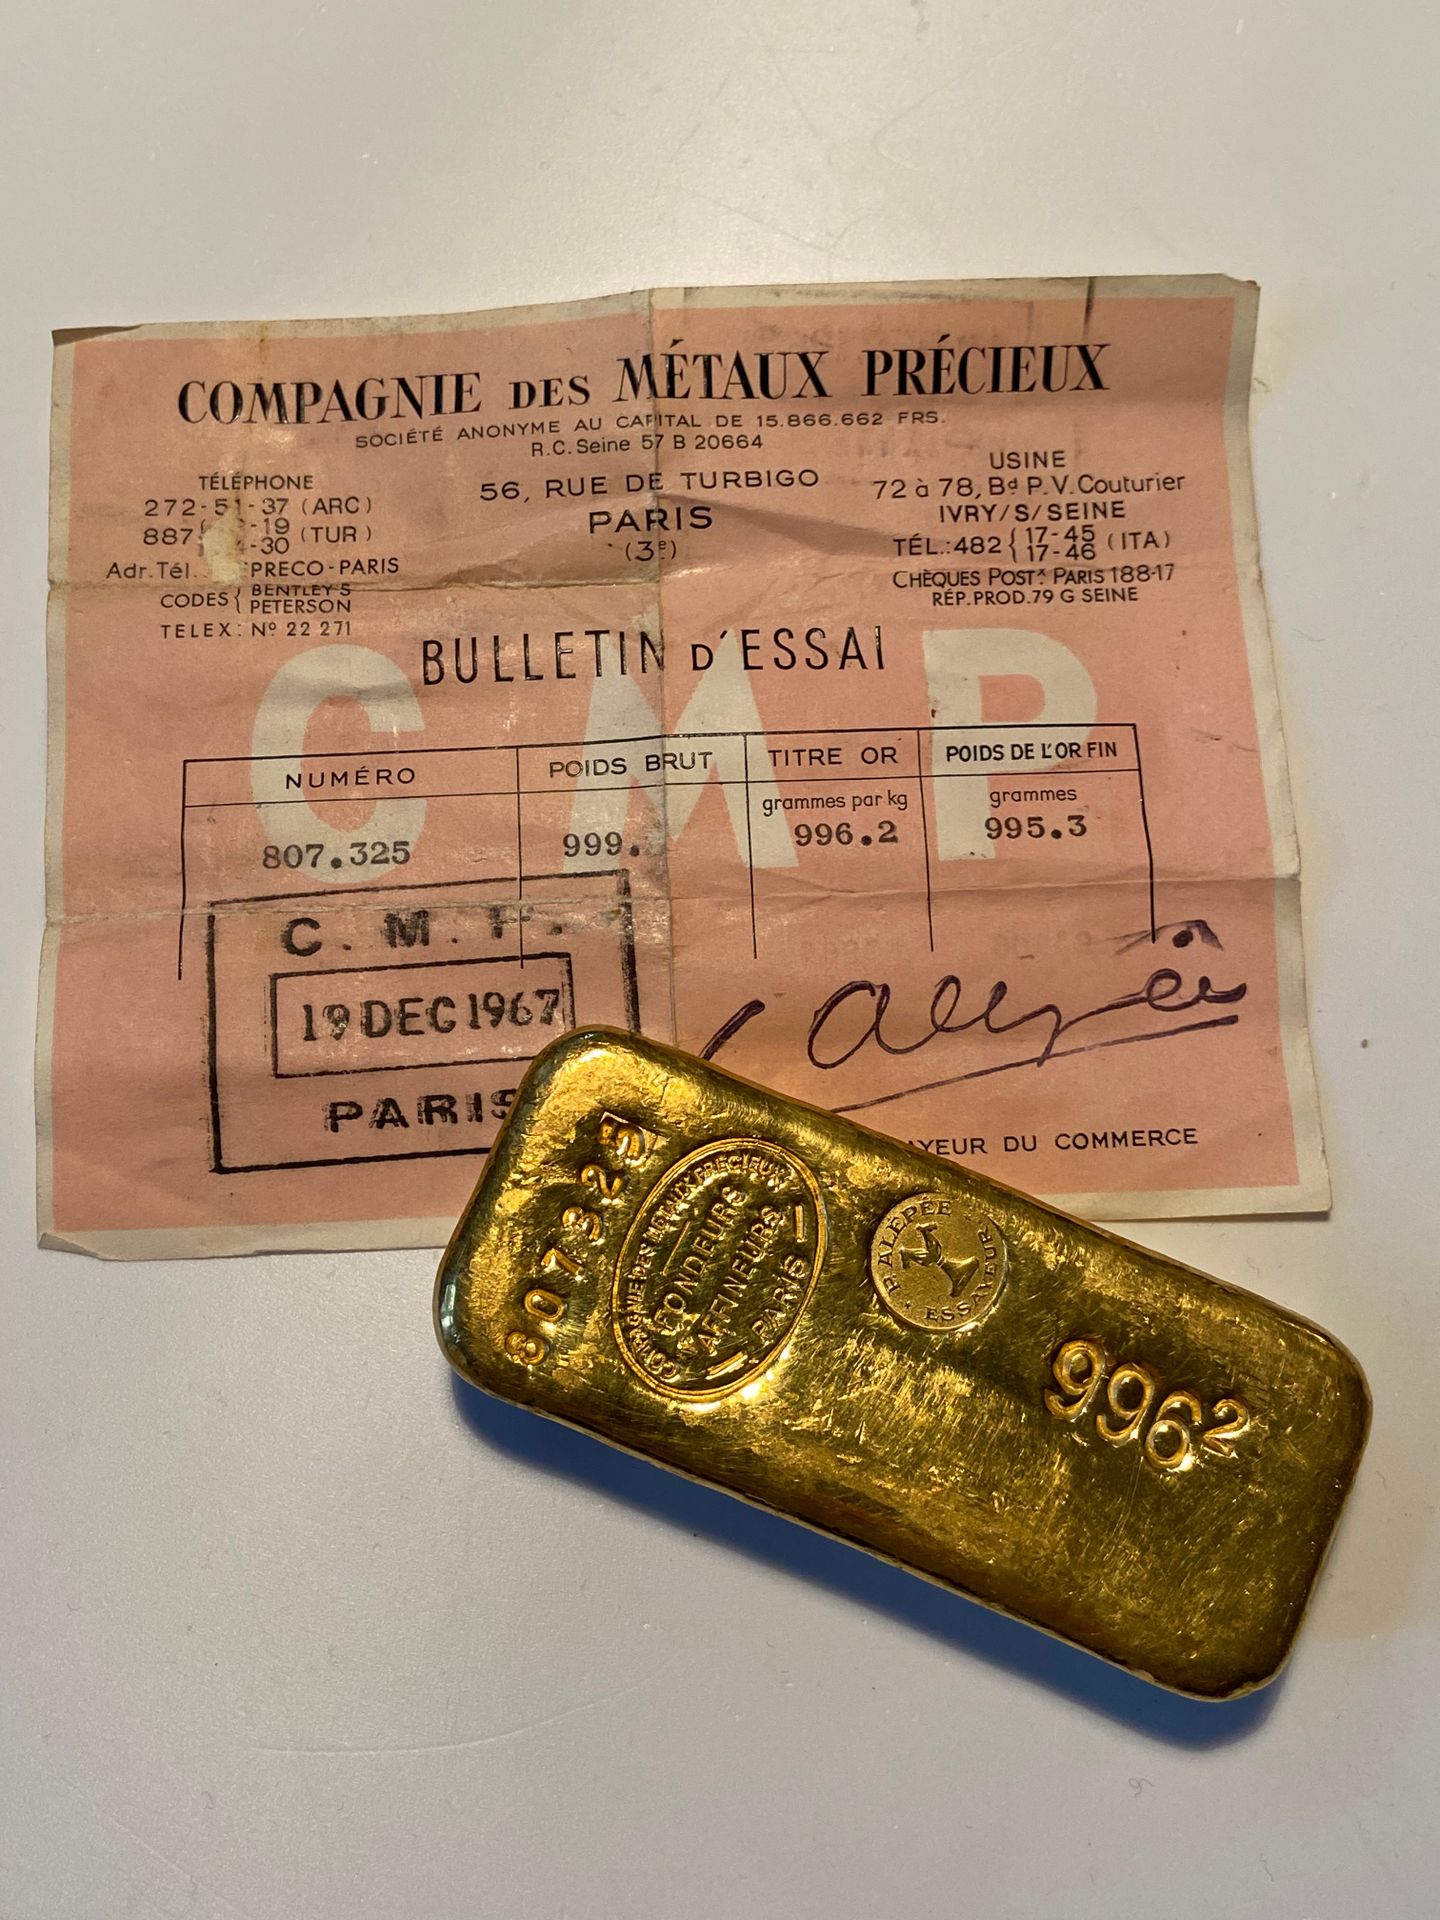 Null 
Un lingote de oro con el número 807325, peso bruto: 999 gr (número después&hellip;